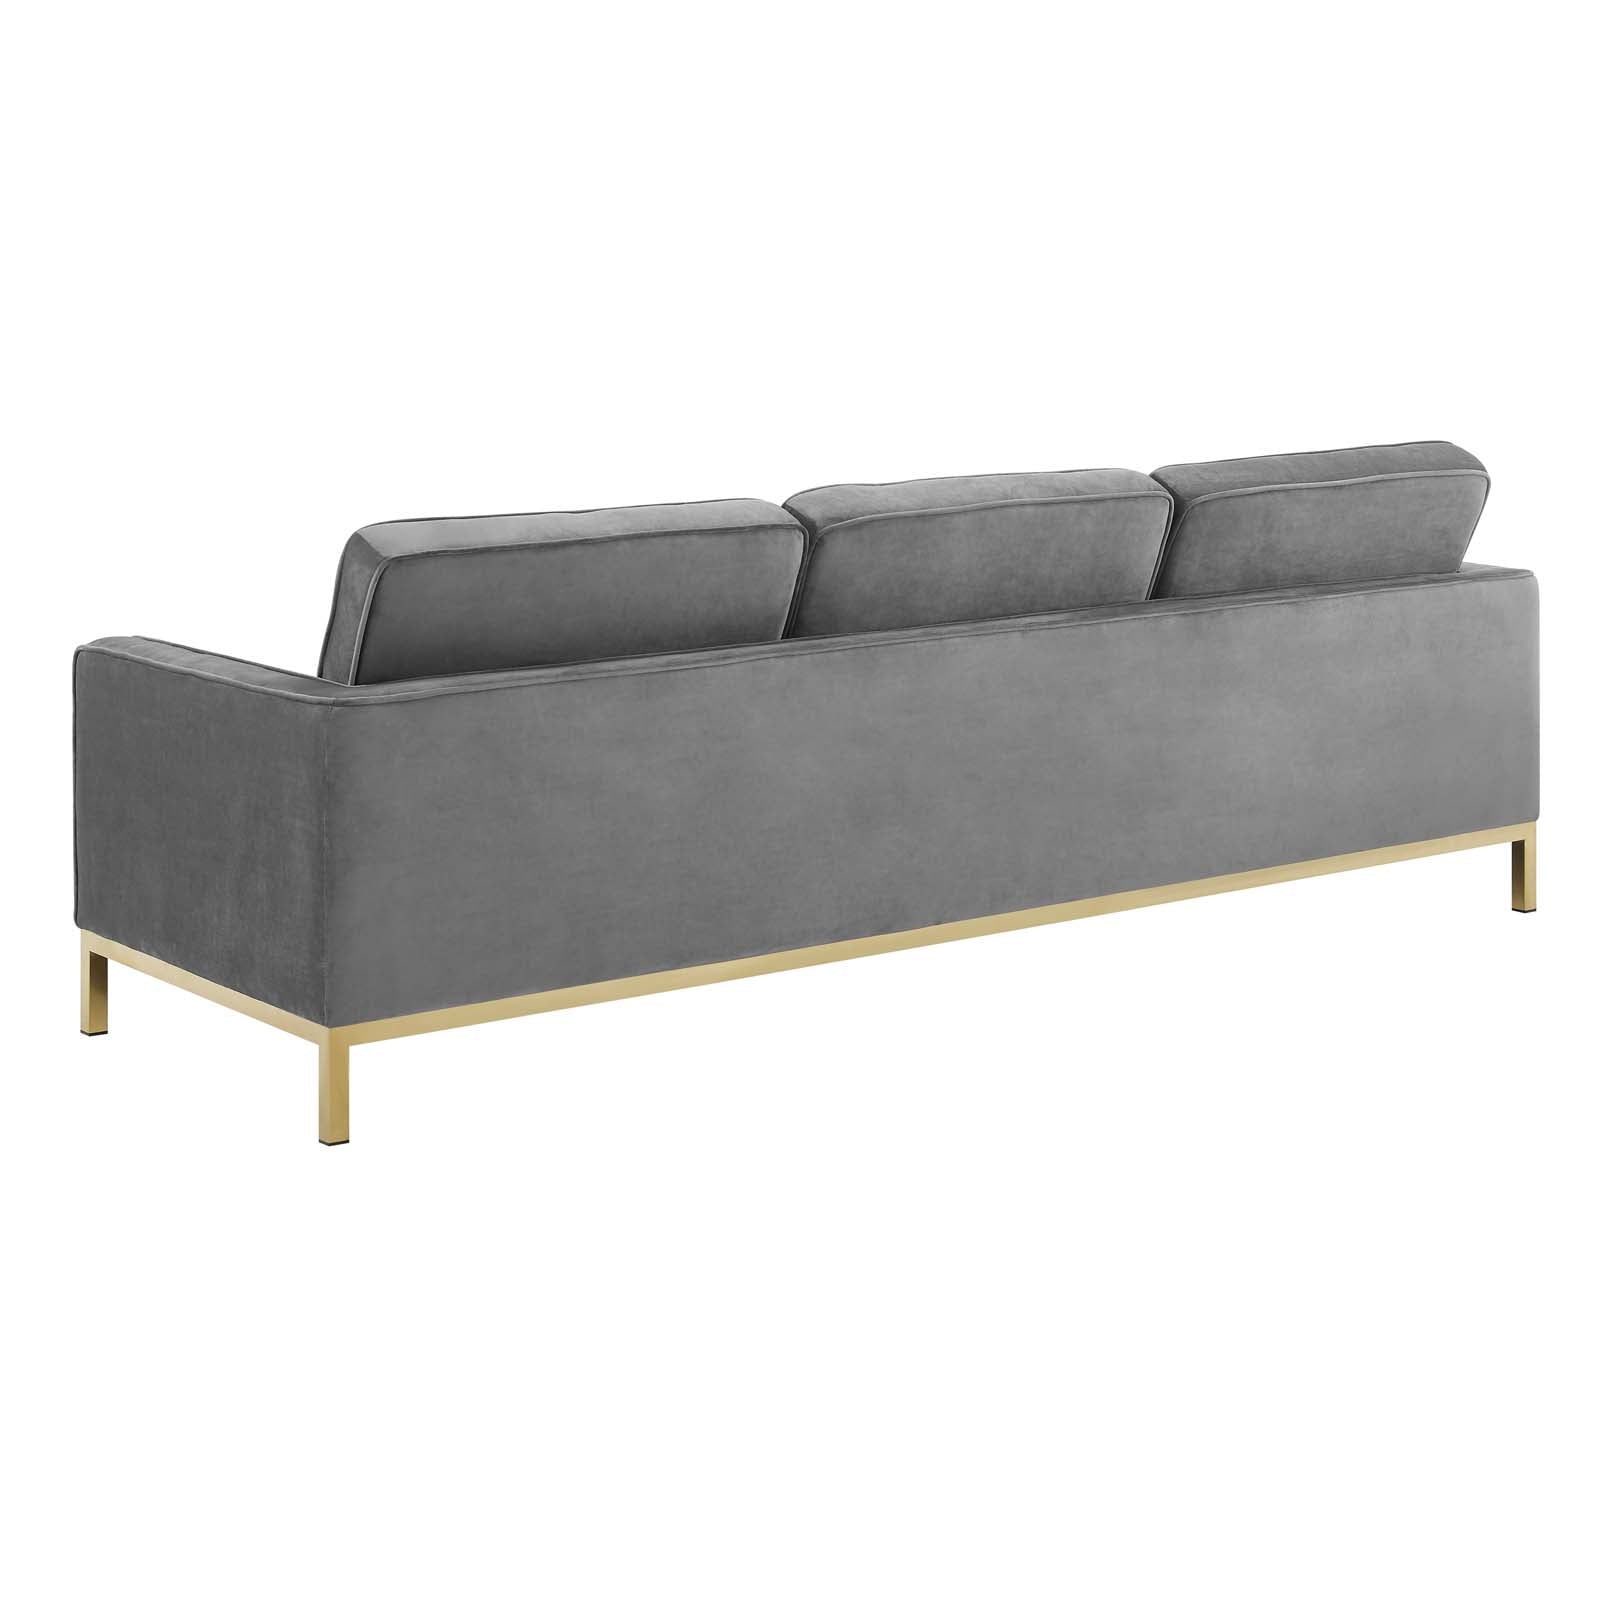 Loft Gold Stainless Steel Leg Performance Velvet Sofa - East Shore Modern Home Furnishings